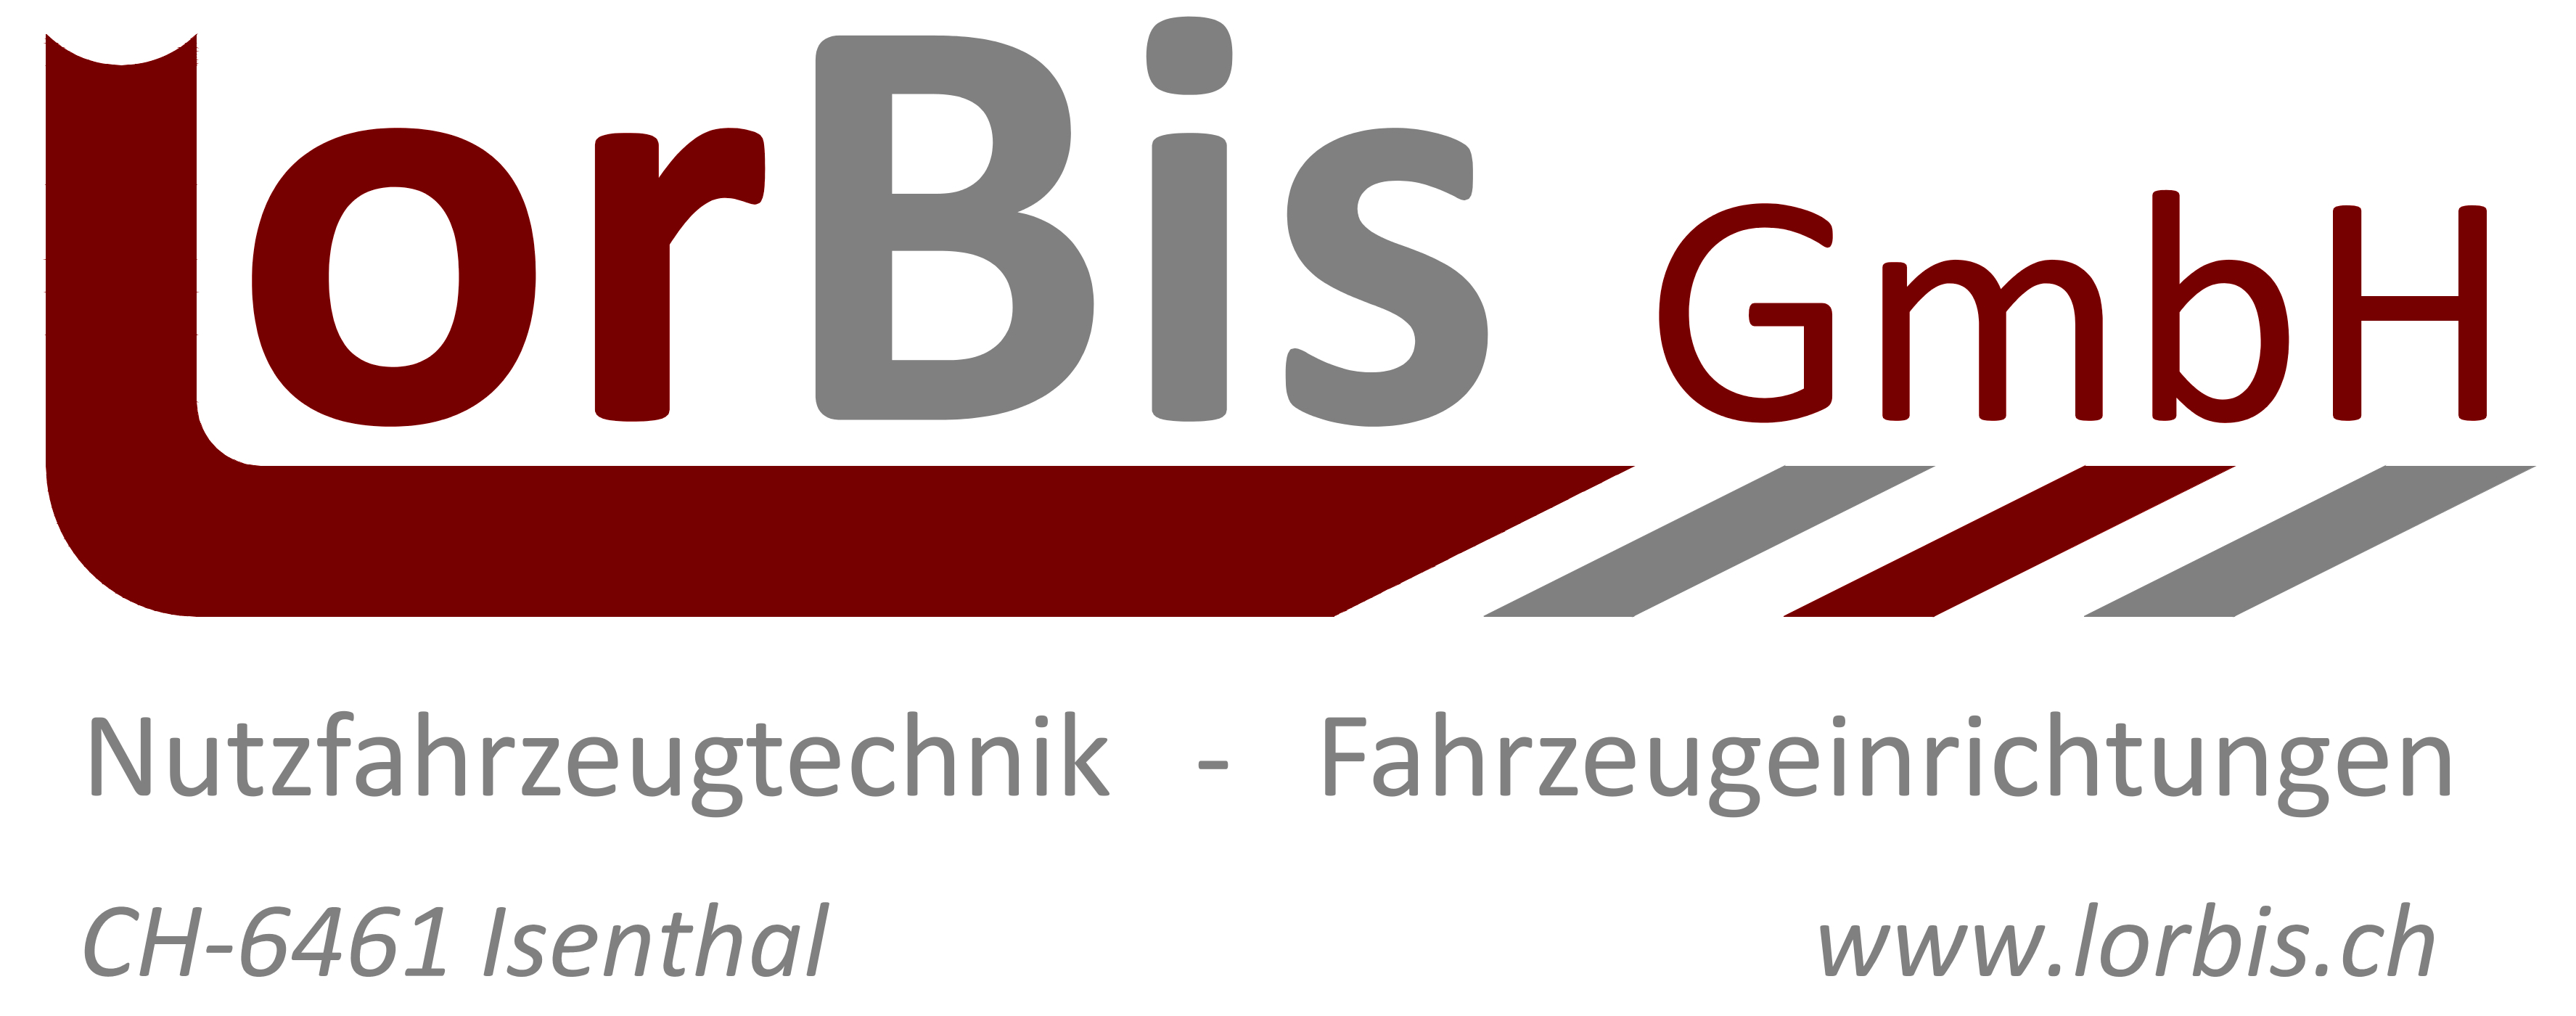 LorBis GmbH Nutzfahrzeugtechnik